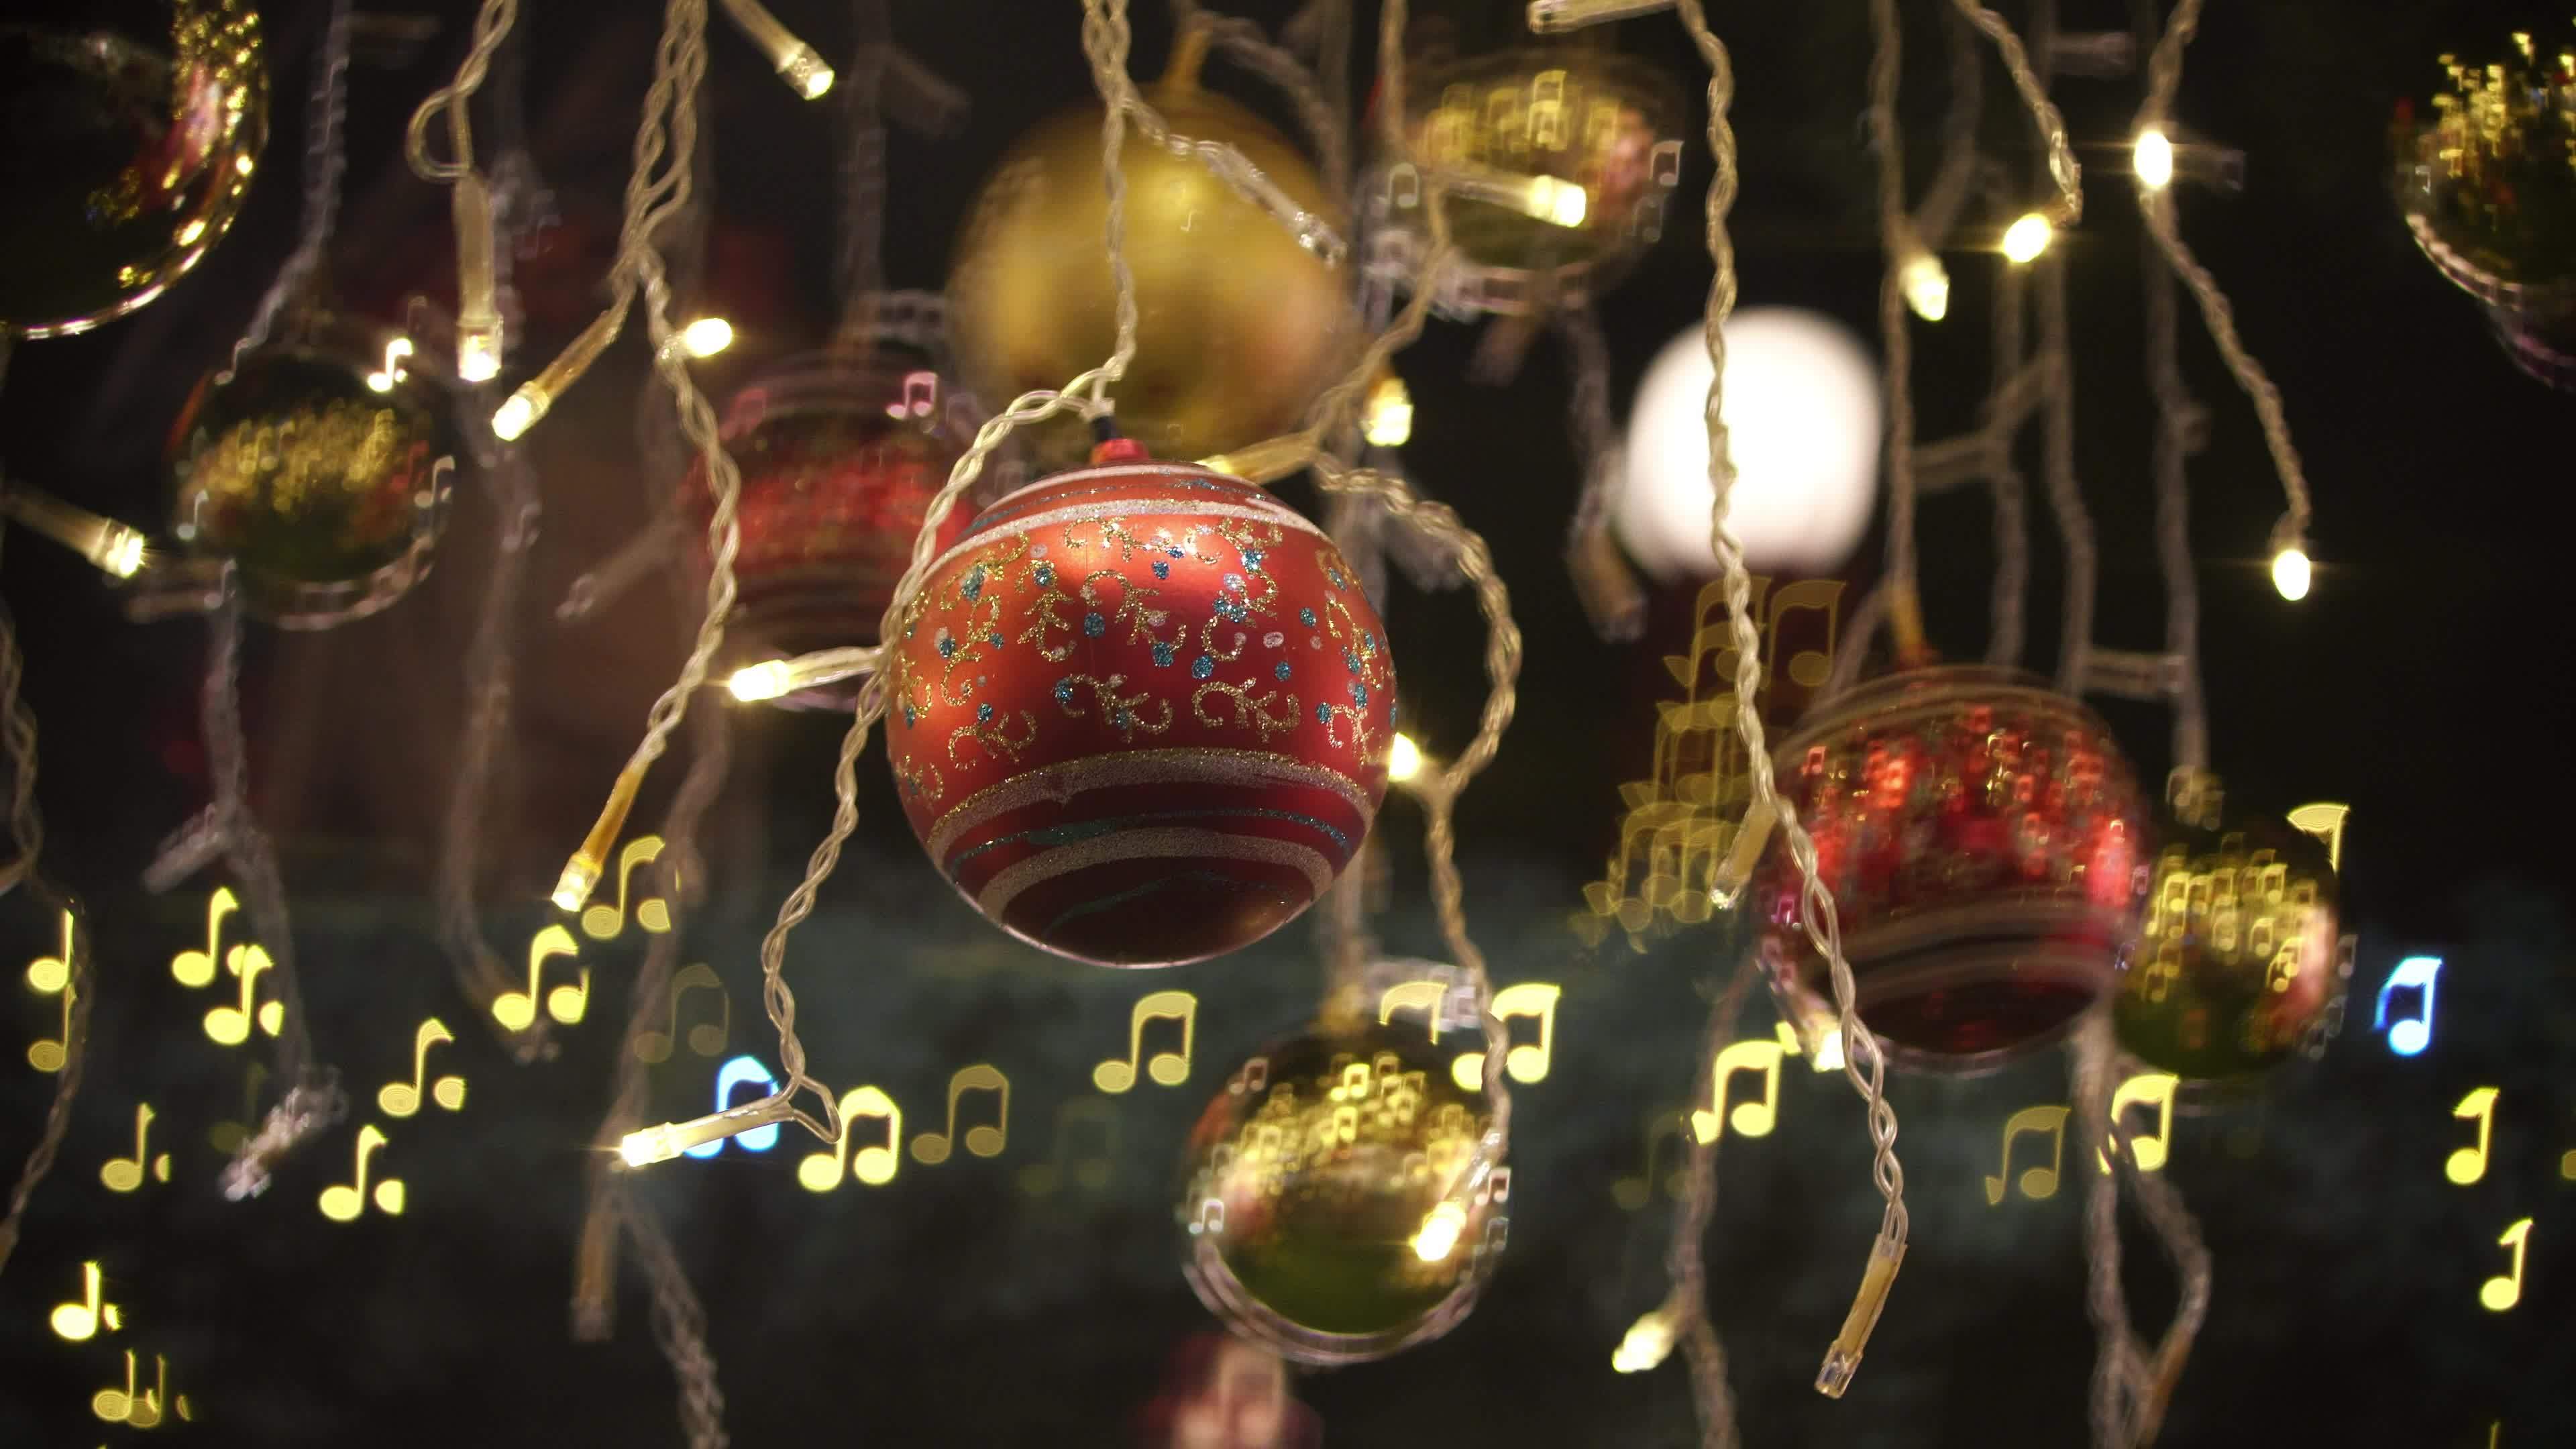 Những quả bóng Giáng sinh sáng trên nền nhạc đầy lý tưởng sẽ đưa bạn đến với không gian Giáng sinh thật đặc biệt. Đừng bỏ lỡ cơ hội để tham gia và tận hưởng ngày lễ đặc biệt này cùng gia đình và những người thân yêu.